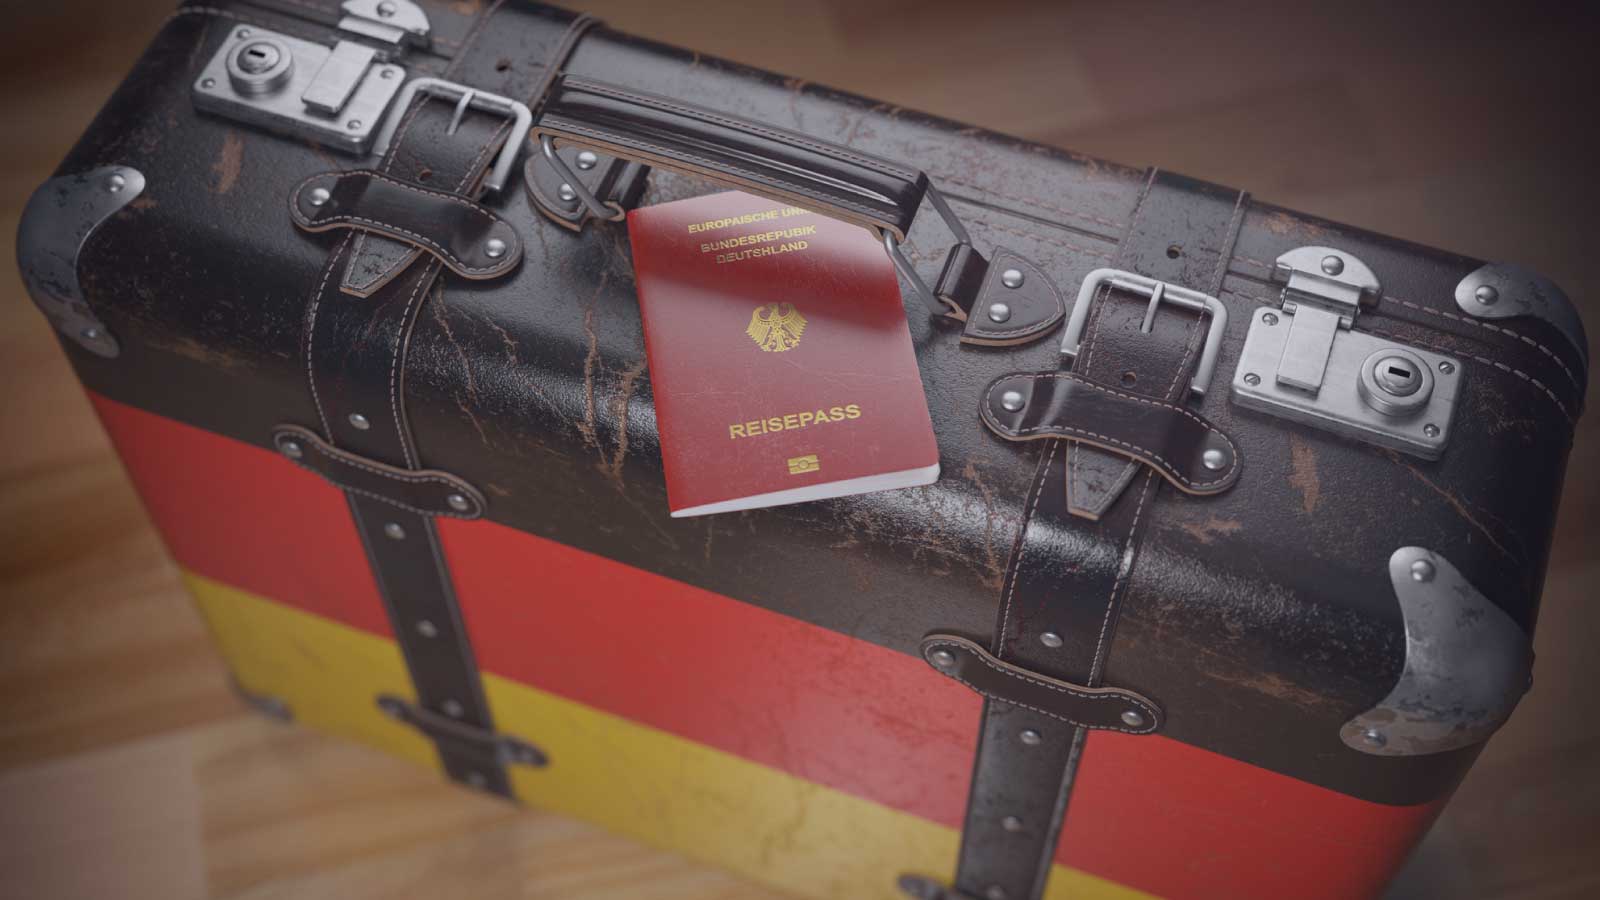 اخذ تابعیت و پاسپورت آلمان از طریق دریافت ویزای کاری آلمان